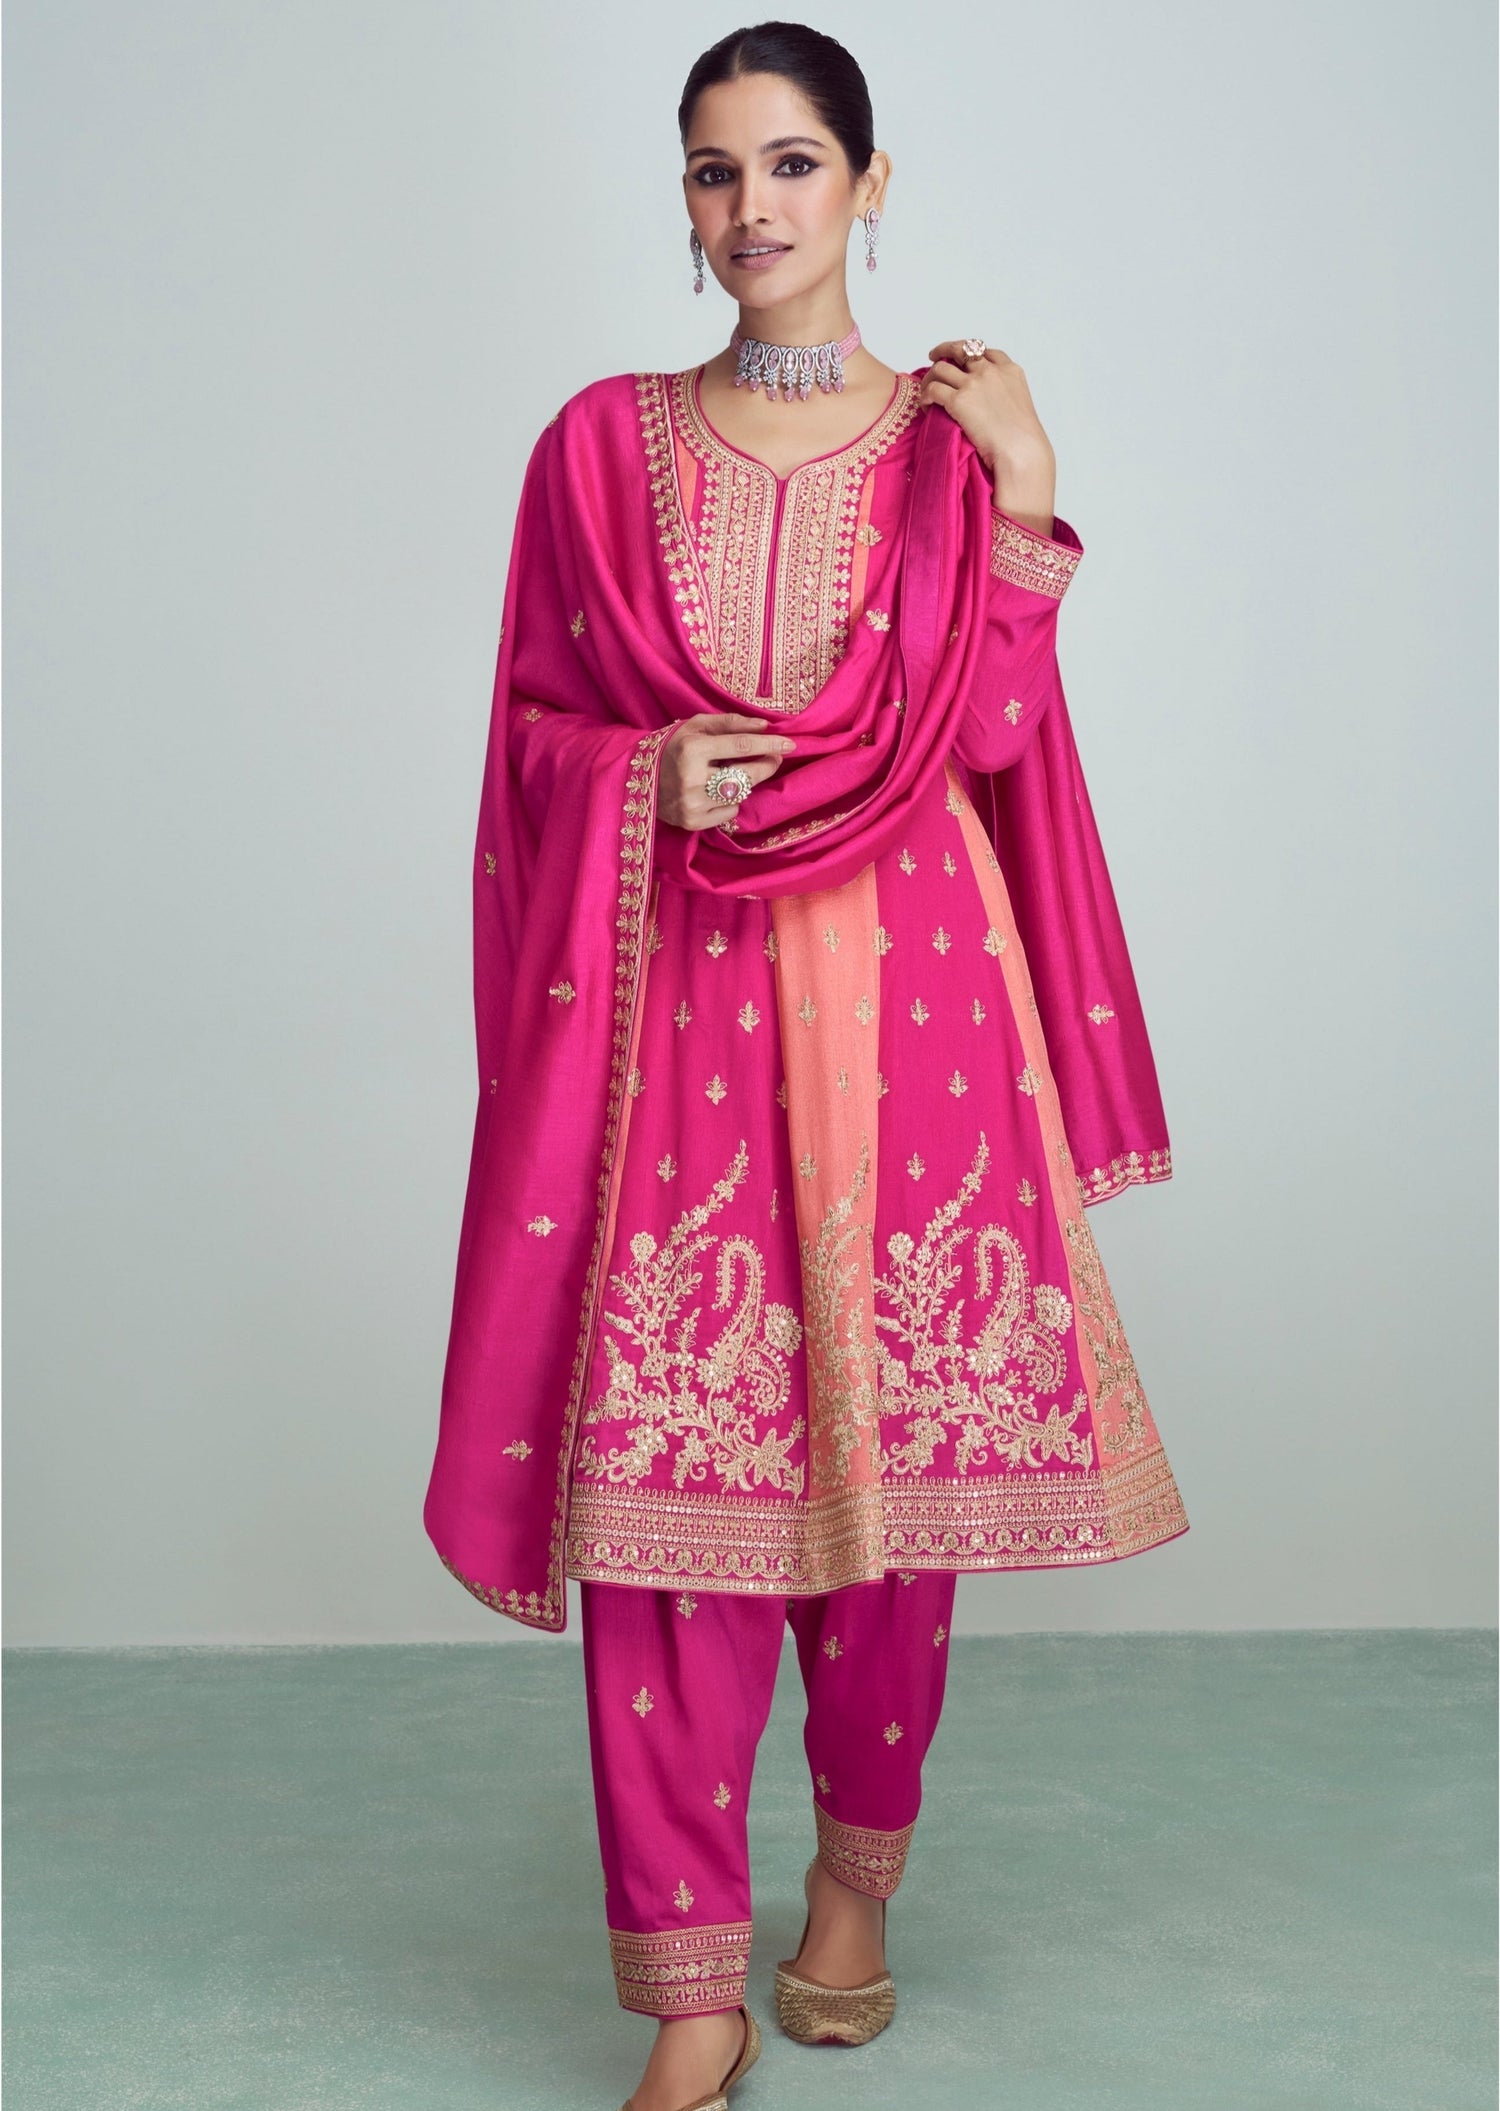 Salwar Suits For Women: कंफर्टेबल फैब्रिक और खूबसूरत डिजाइन वाले इन सलवार  सूट को करें Teej पर कैरी | teej 2023 best salwar suits for women to ensure  an elegant look | HerZindagi